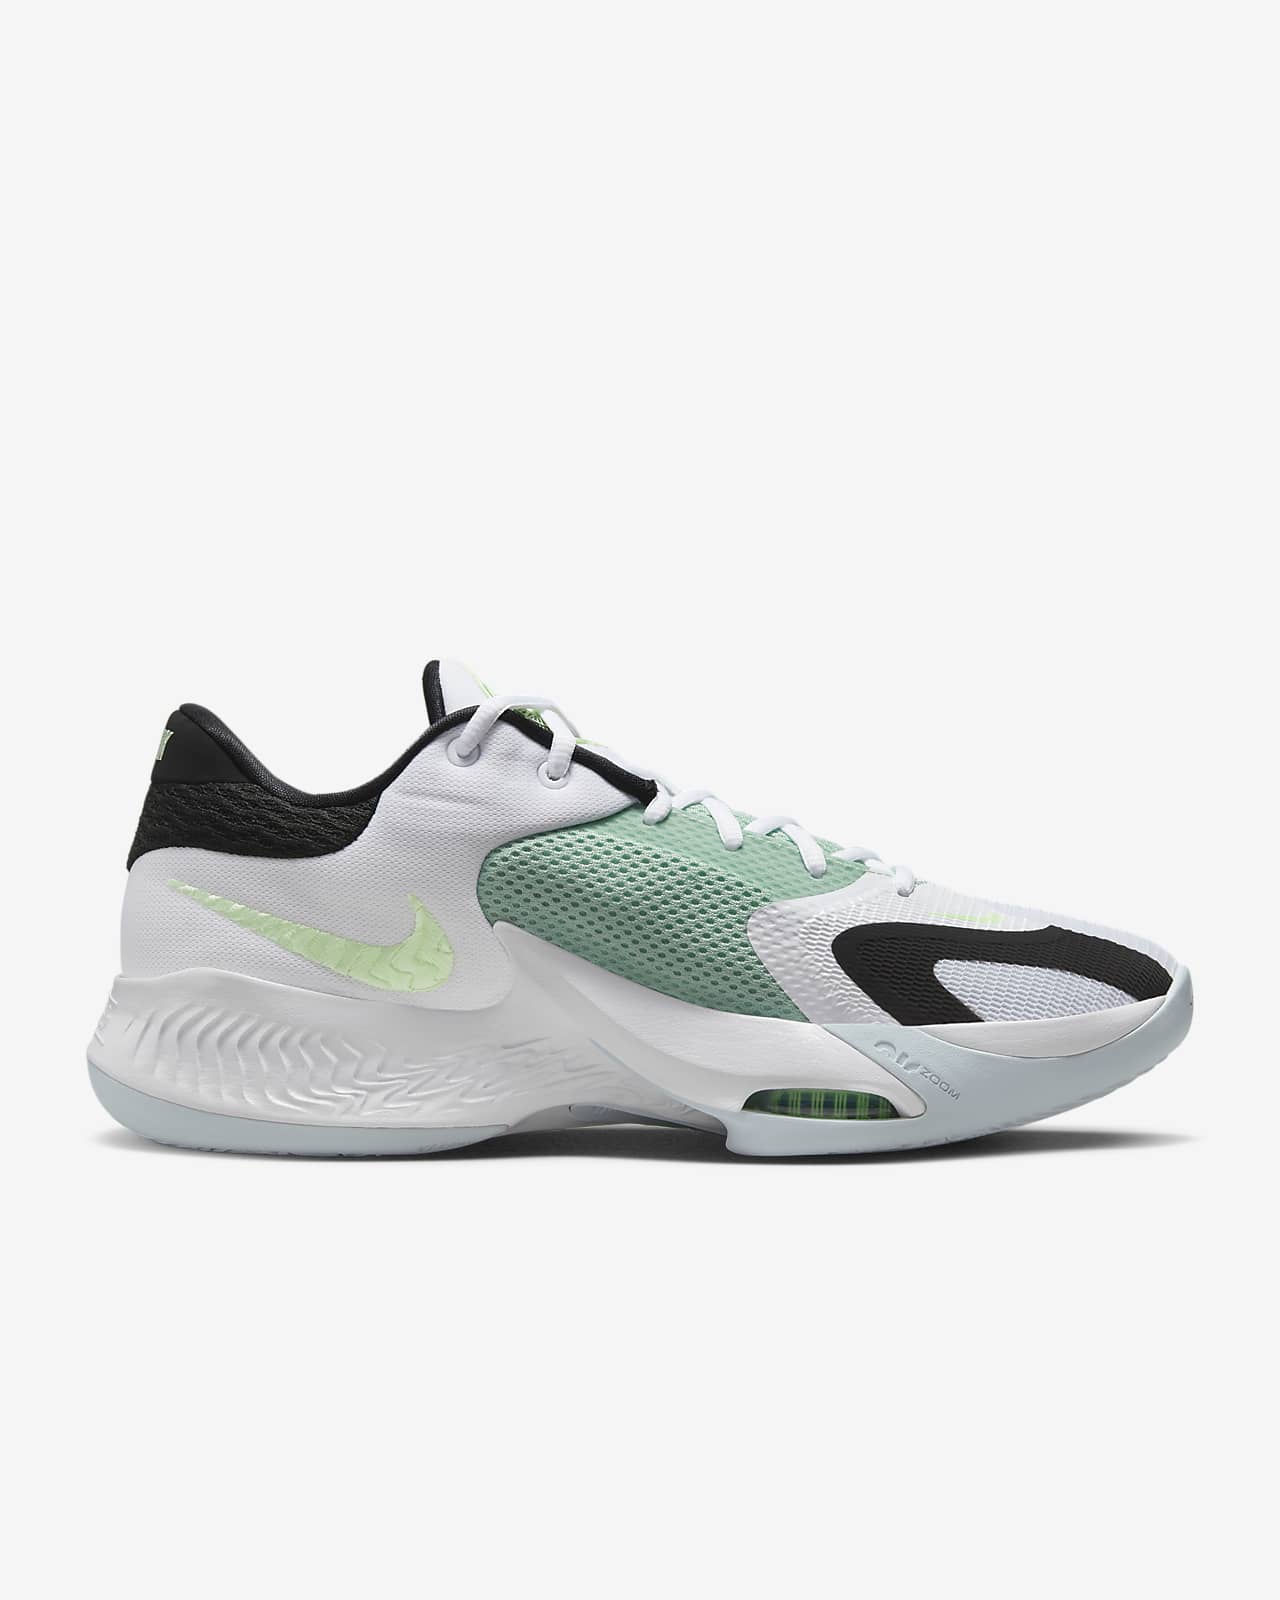 4 "Greek Coastline" Shoes. Nike.com